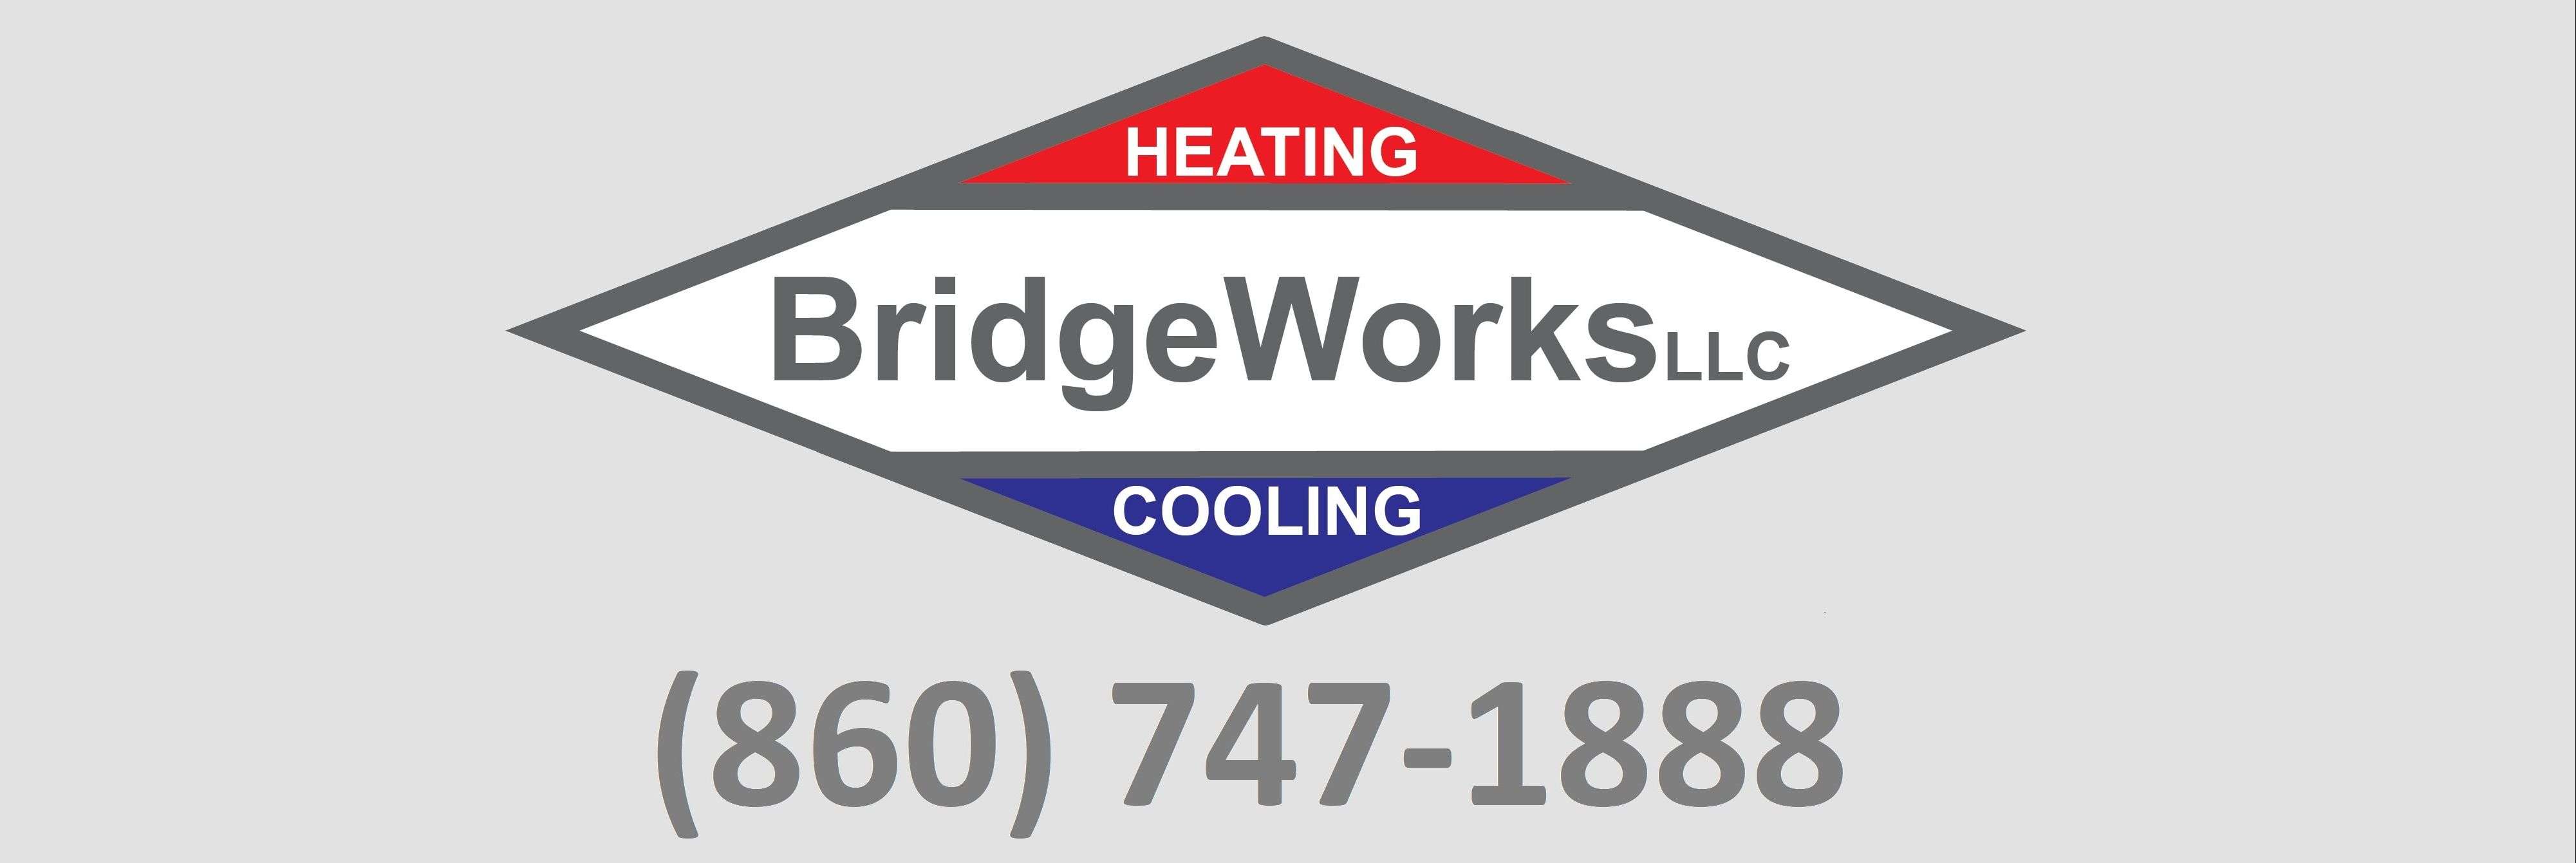 BridgeWorks Heating & Cooling LLC Logo